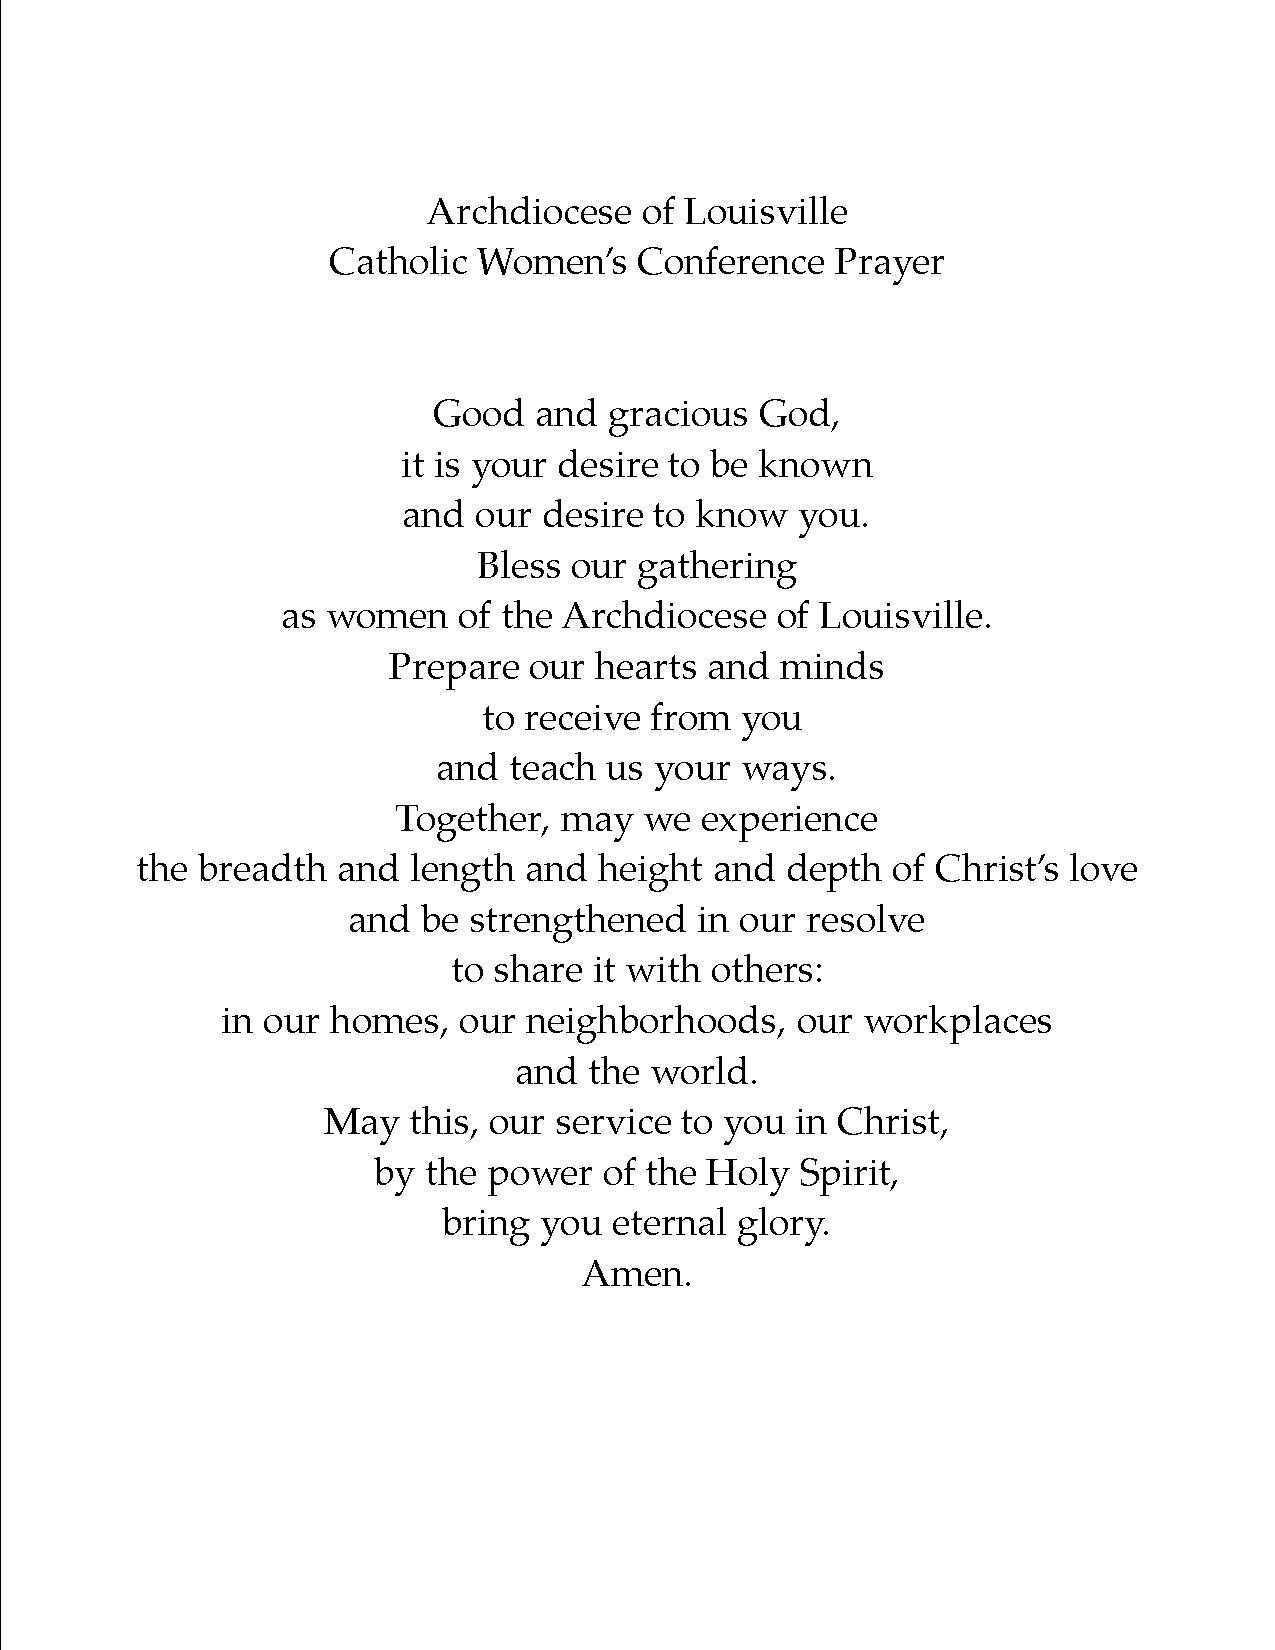 http://cwclouisville.net/wp-content/uploads/2015/04/Prayer.jpg